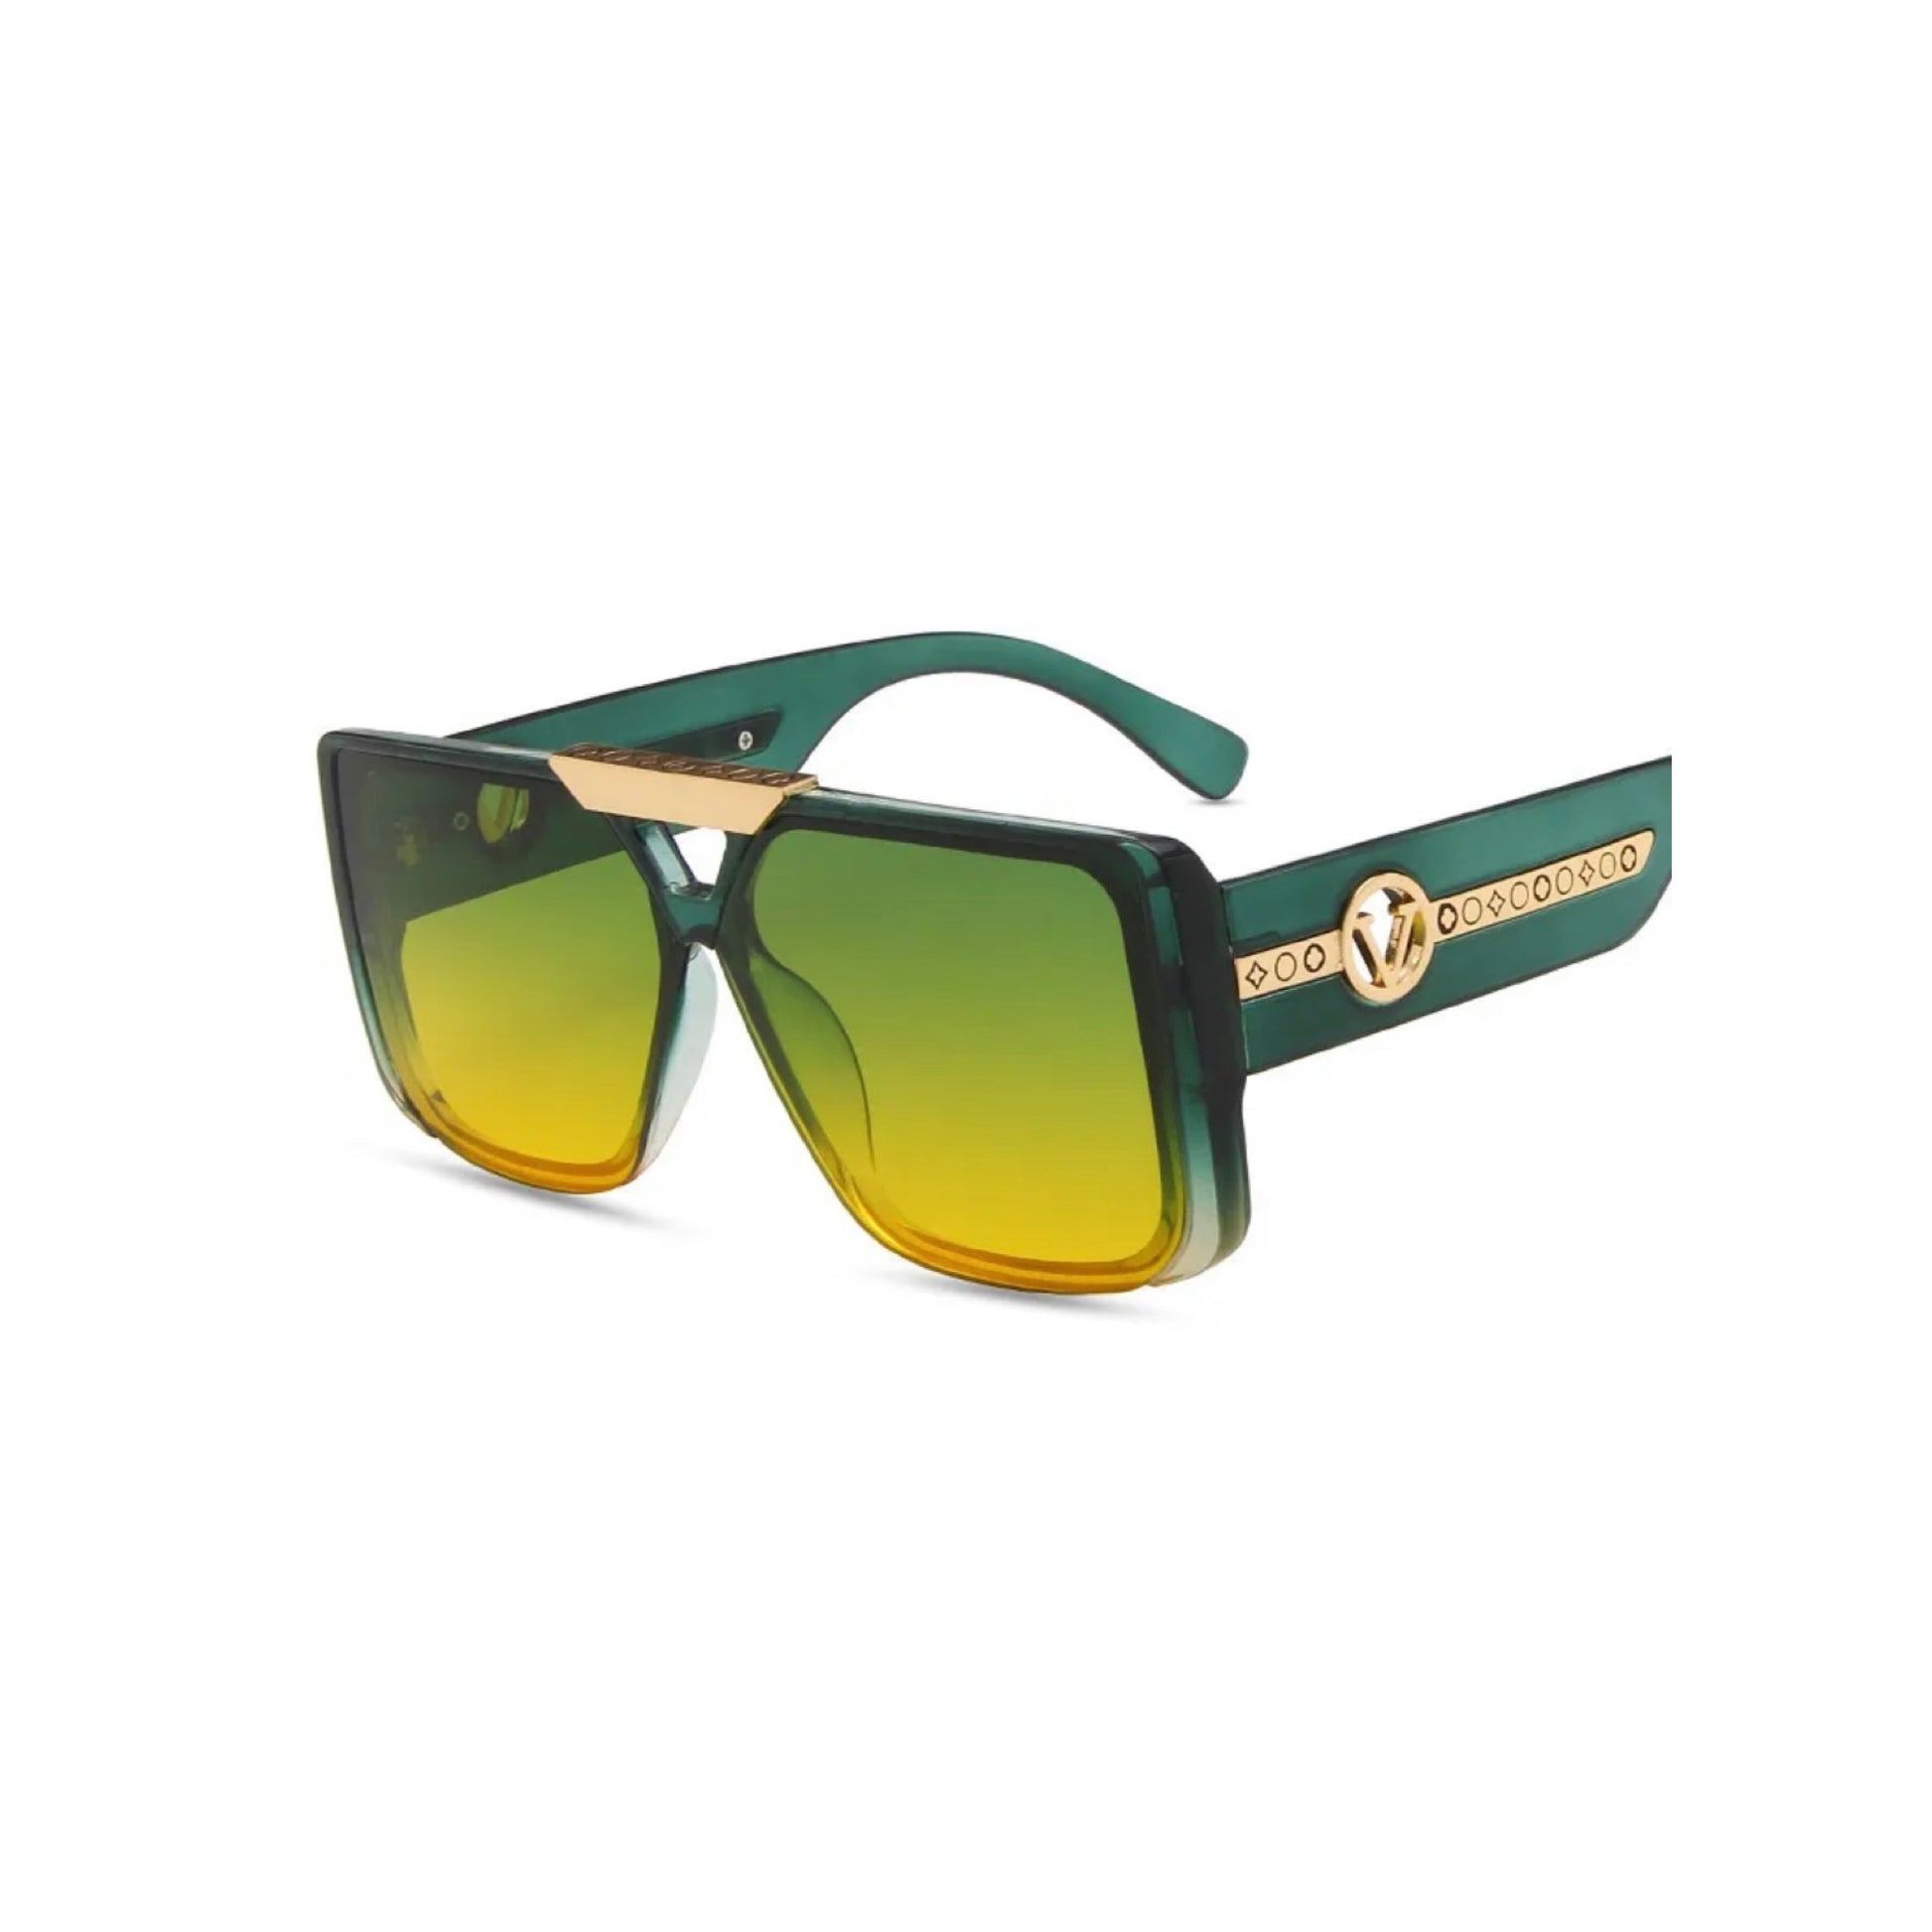 miami sunglasses cute sunglasses for women luxury sunglasses for women light sunglasses quality sunglasses luxury shades